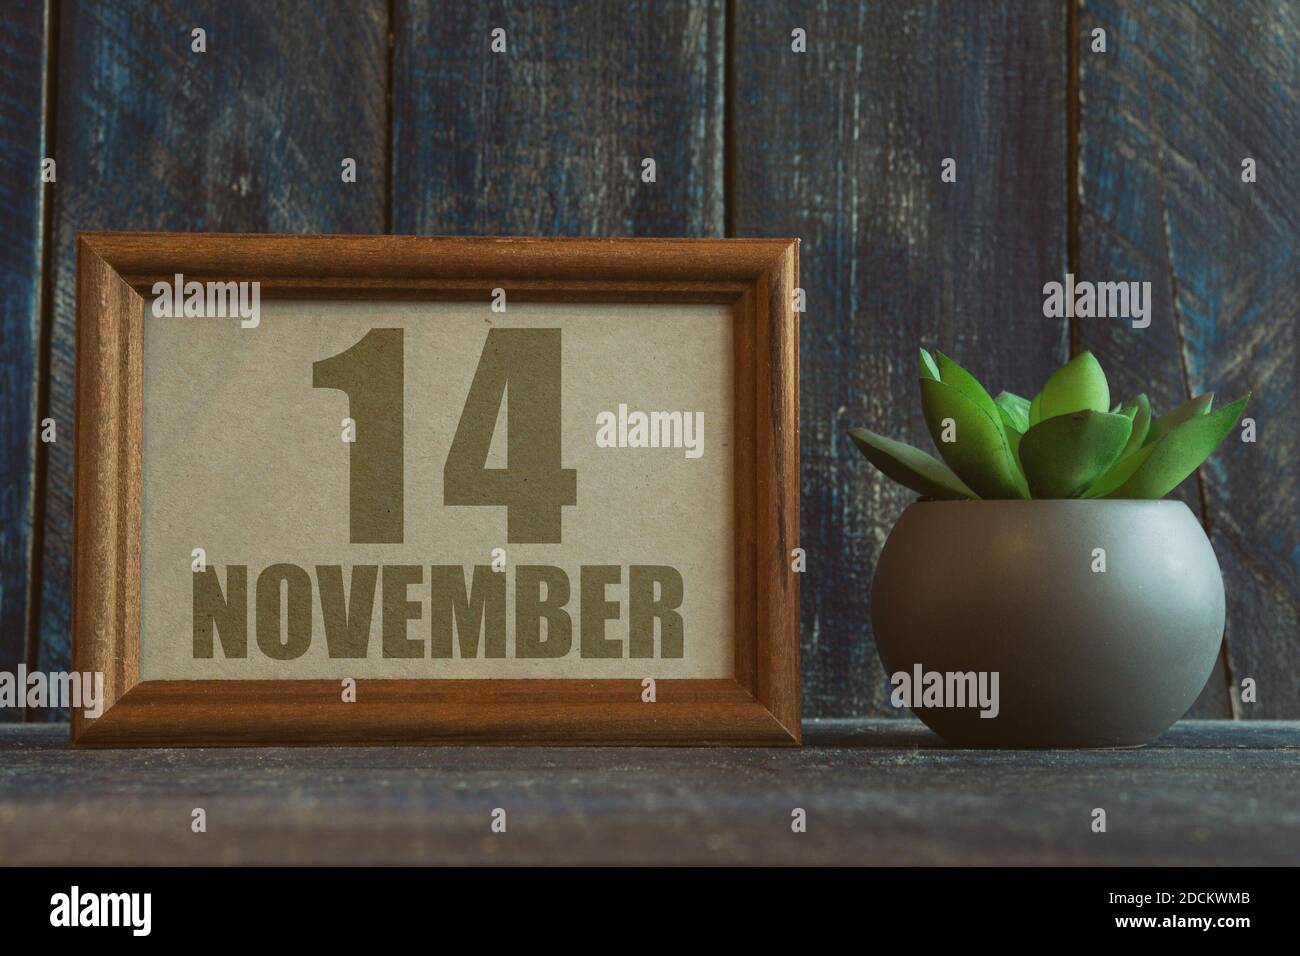 november 14th. Tag 14 des Monats, Datum im Rahmen neben Sukkulente auf Holzhintergrund Herbstmonat, Tag des Jahres Konzept Stockfoto